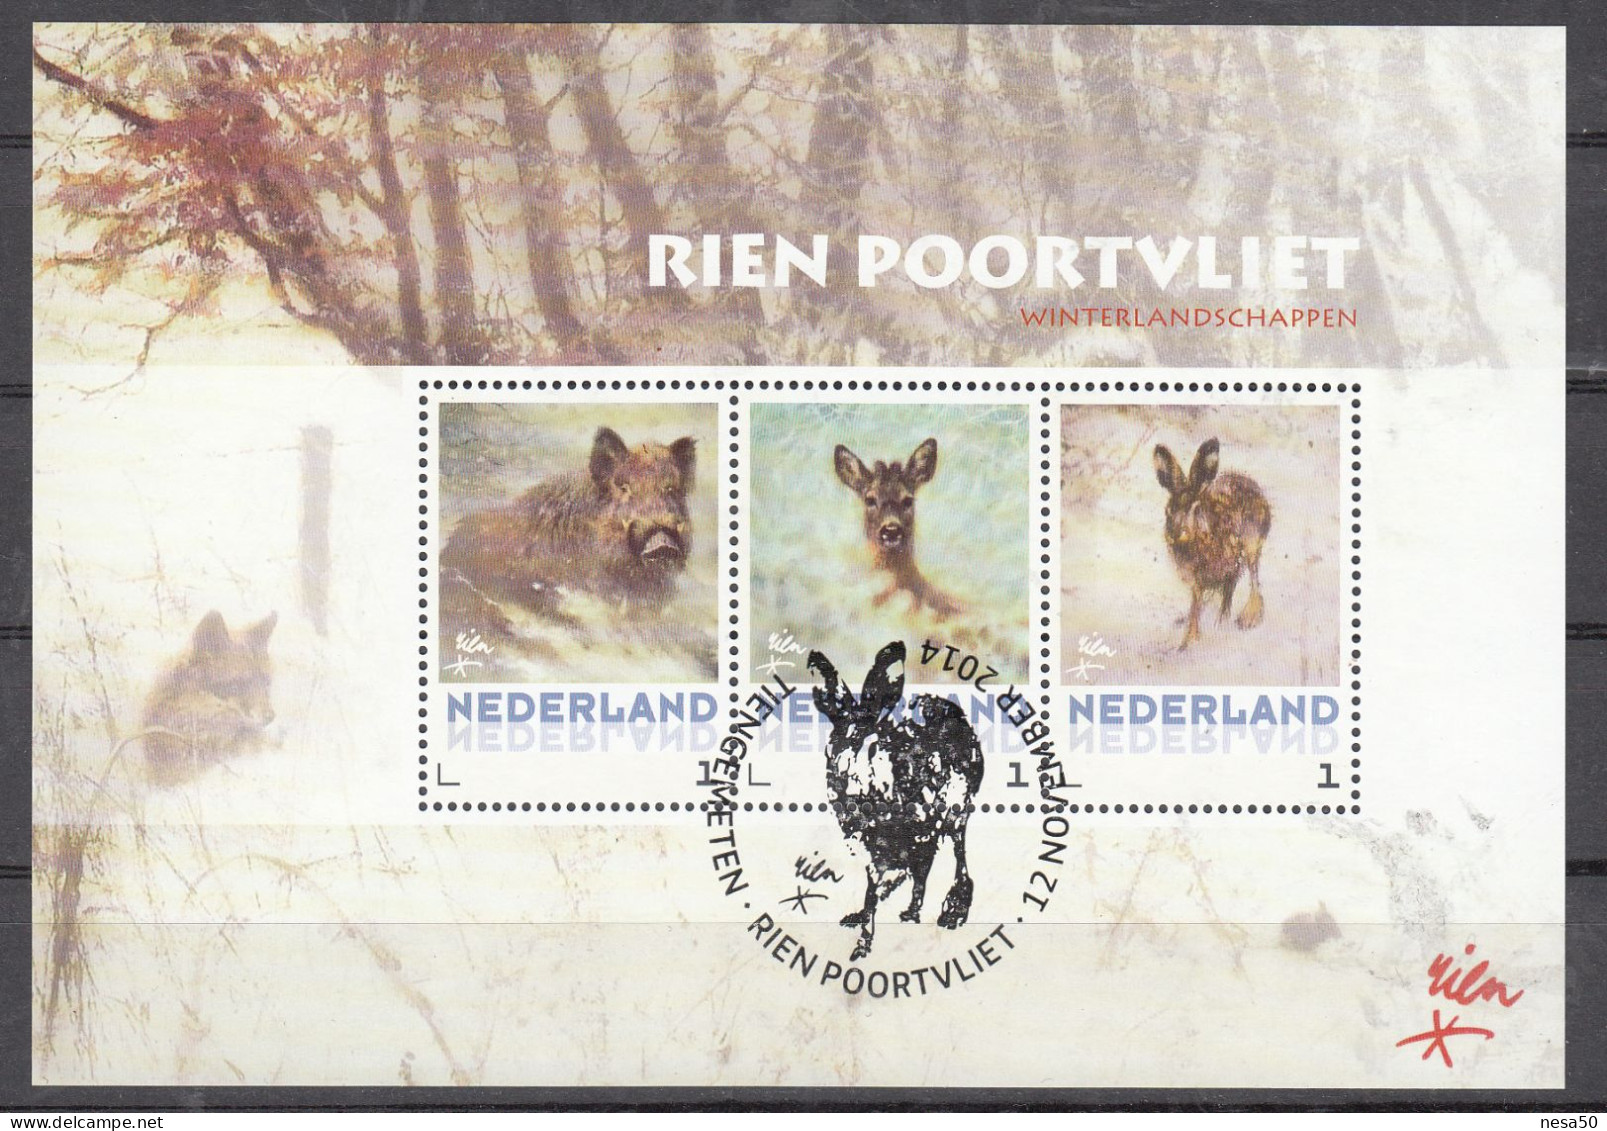 Nederland Persoonlijke Zegel, Rien Poortvliet, Wild Zwijn, Hert, Haas, Wild Boar, Deer, Hare, Speciale Stempel - Oblitérés